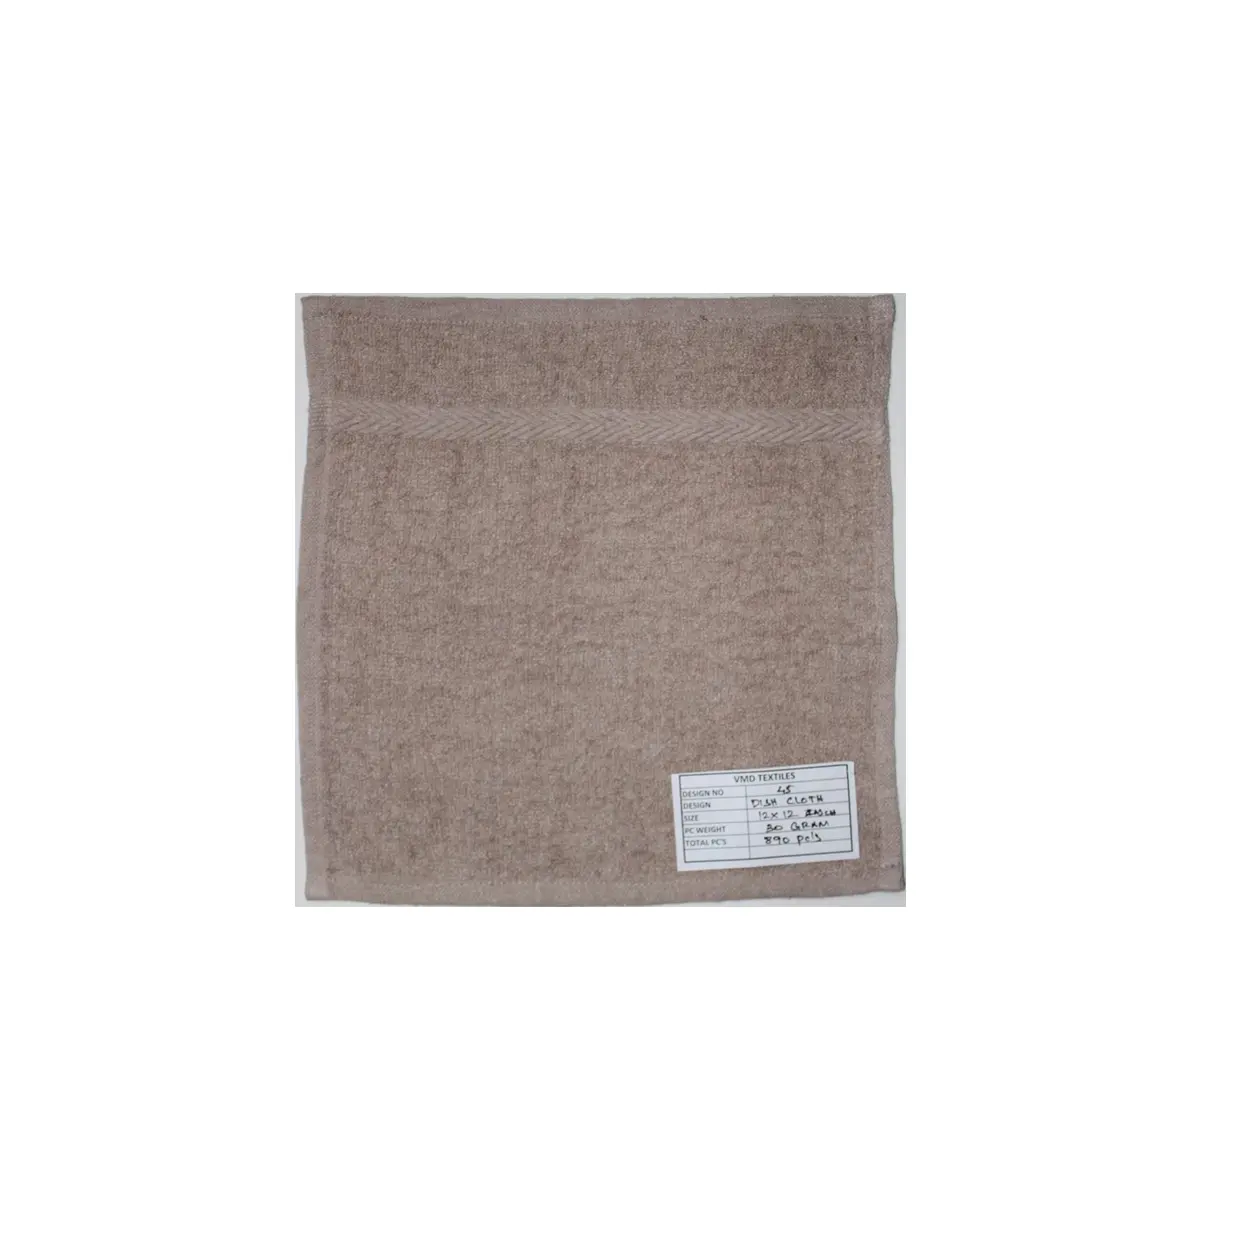 Хорошее качество махровое полотенце для рук пряжа окрашенное однотонное Хлопковое полотенце для рук для продажи от индийских экспортеров по низким ценам